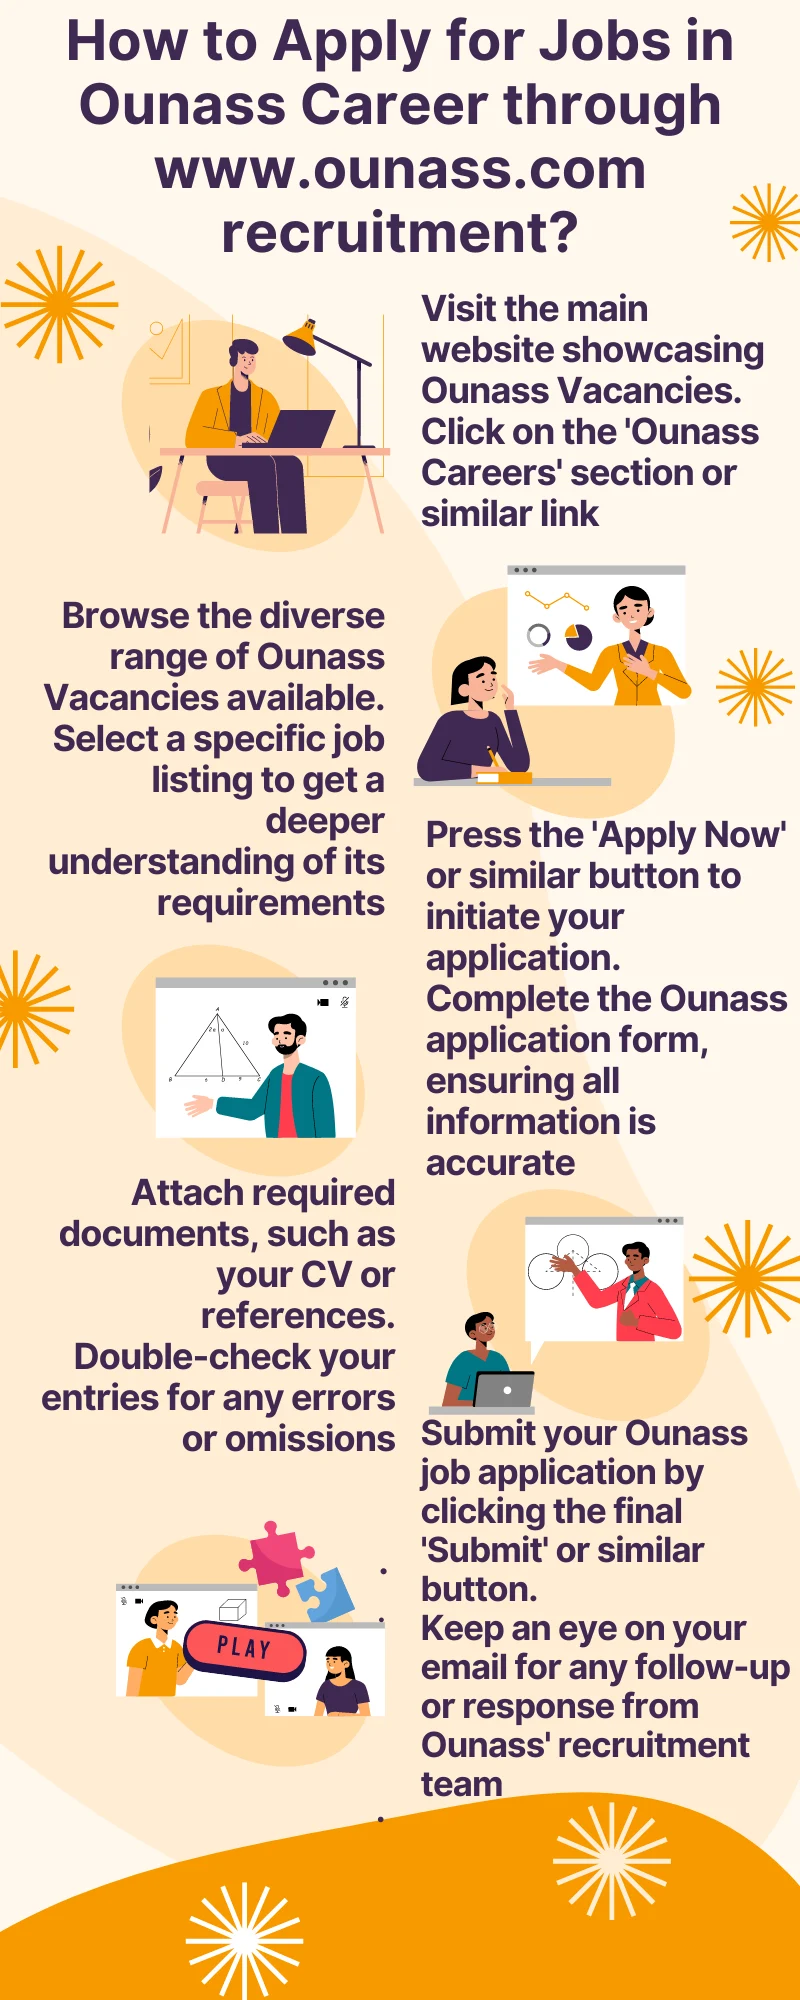 How to Apply for Jobs in Ounass Career through www.ounass.com recruitment?